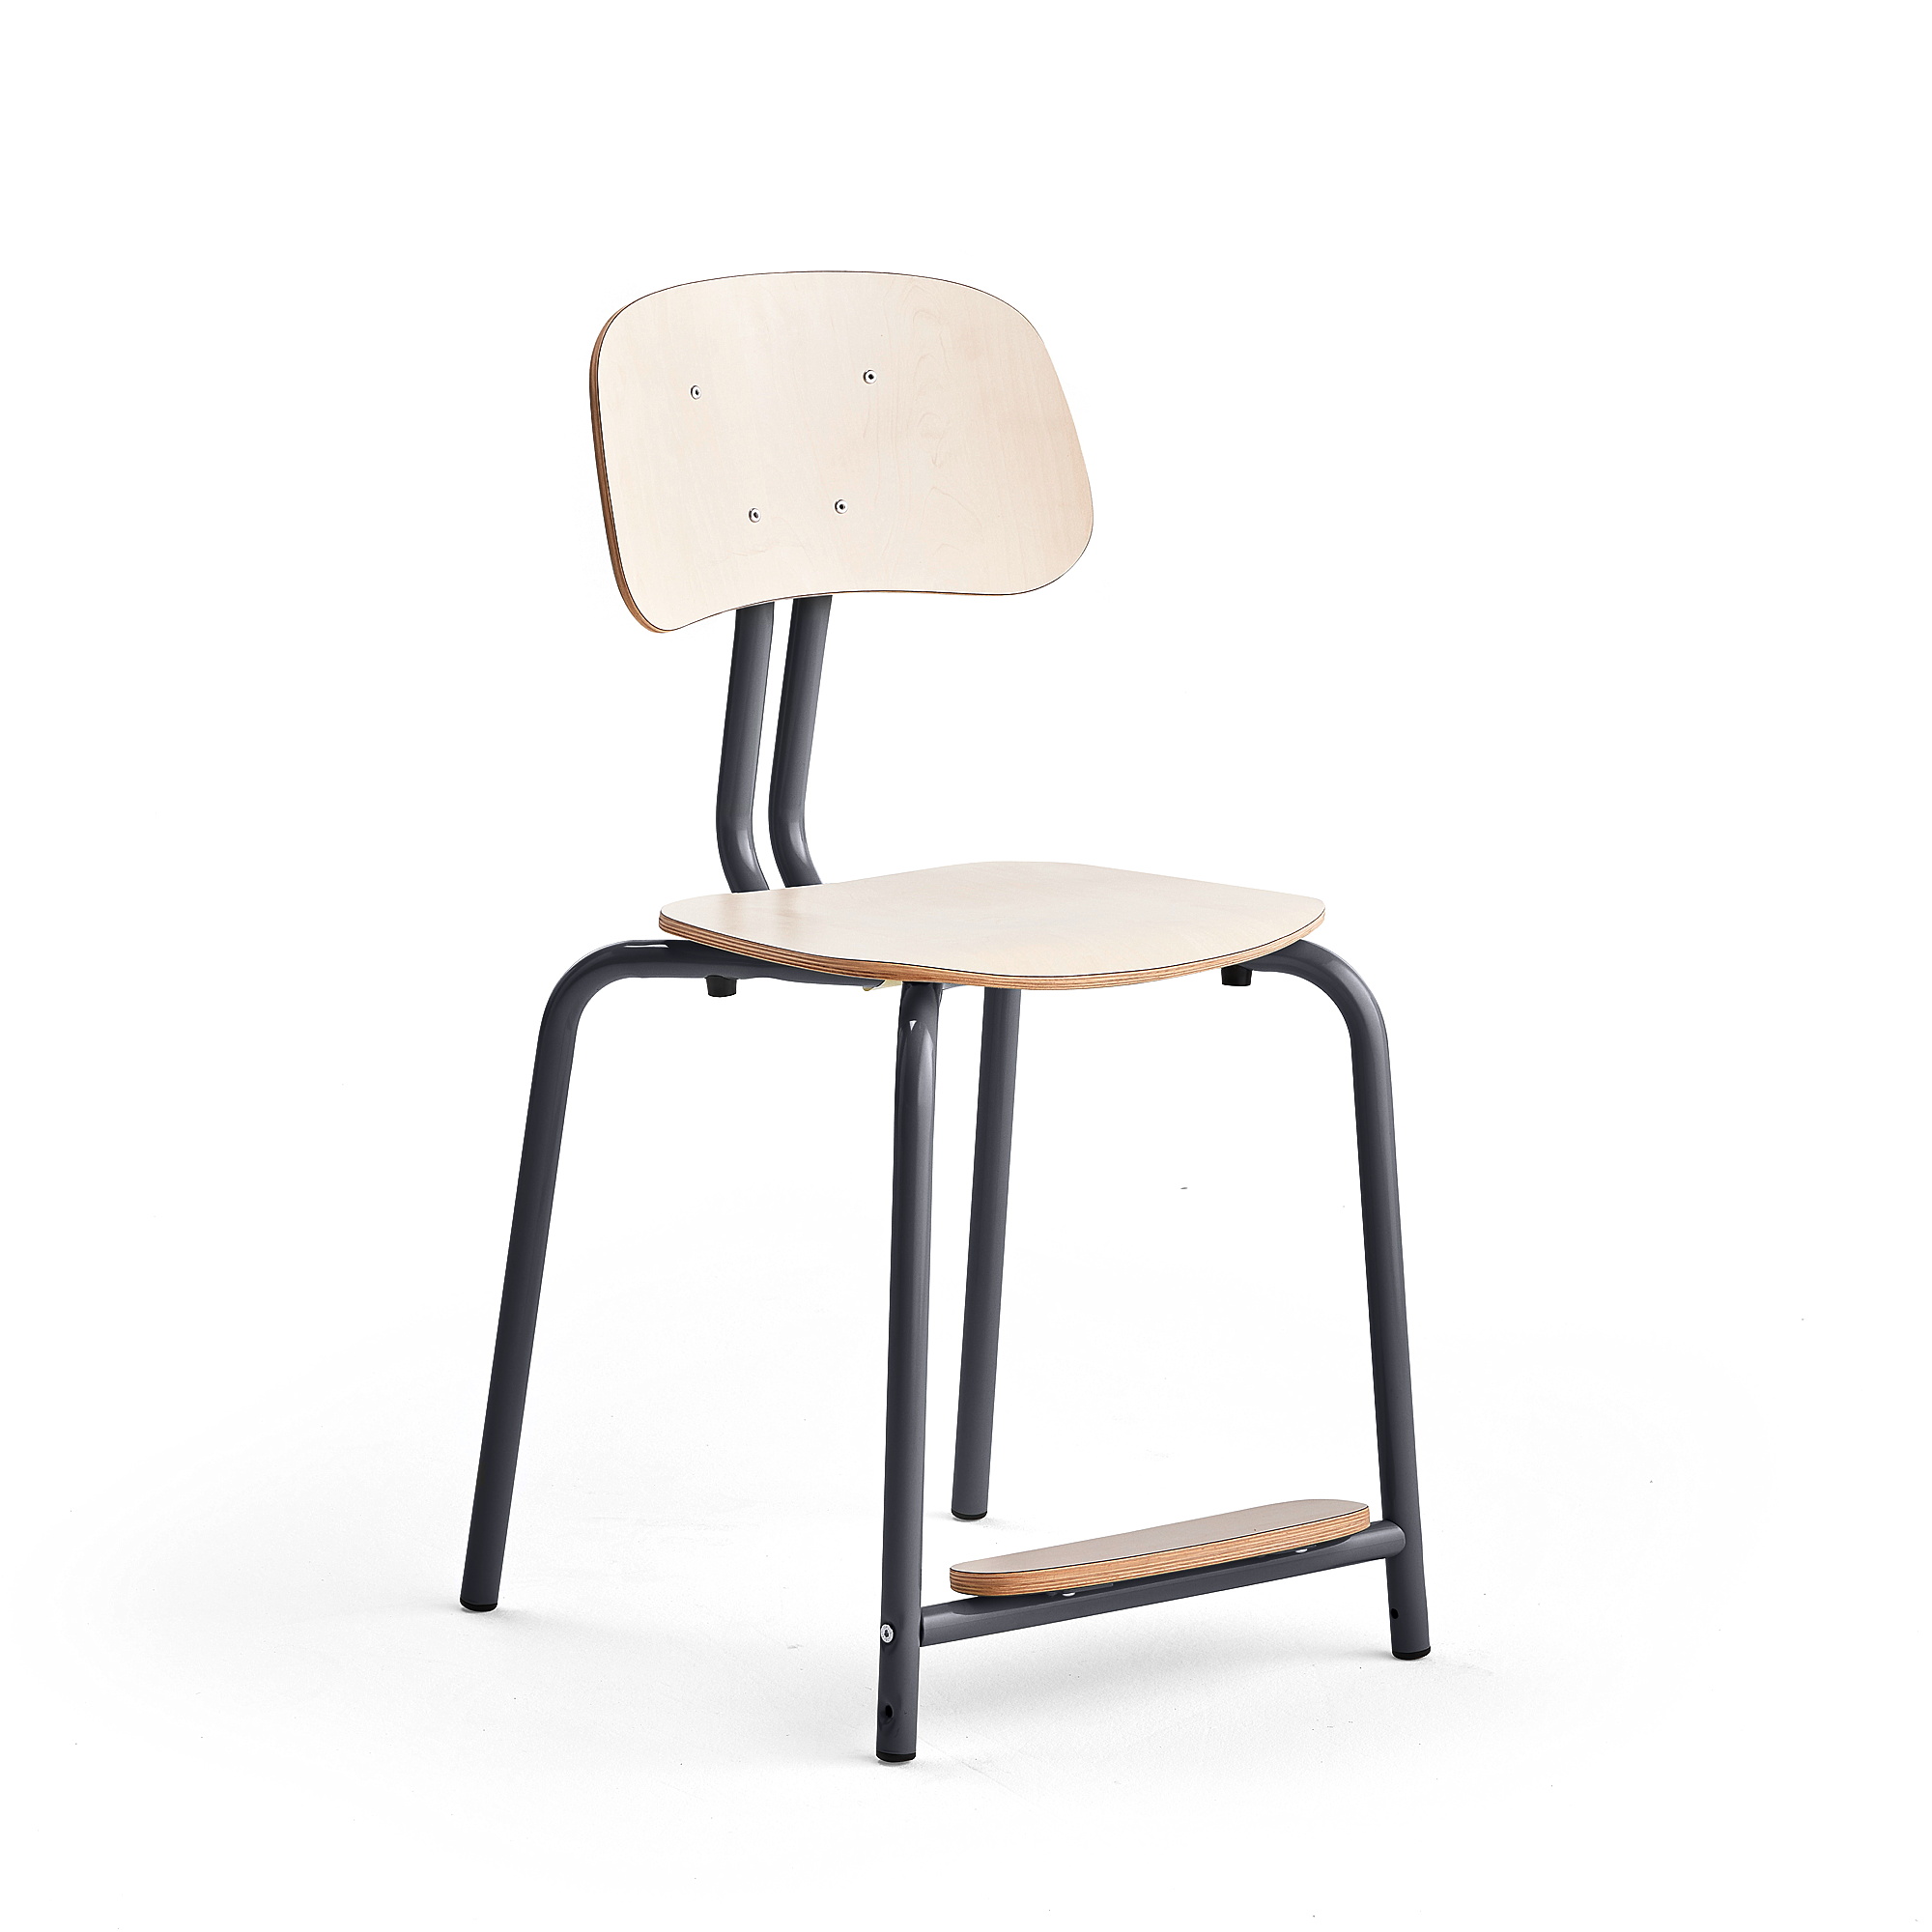 Školní židle YNGVE, 4 nohy, výška 500 mm, antracitově šedá/bříza